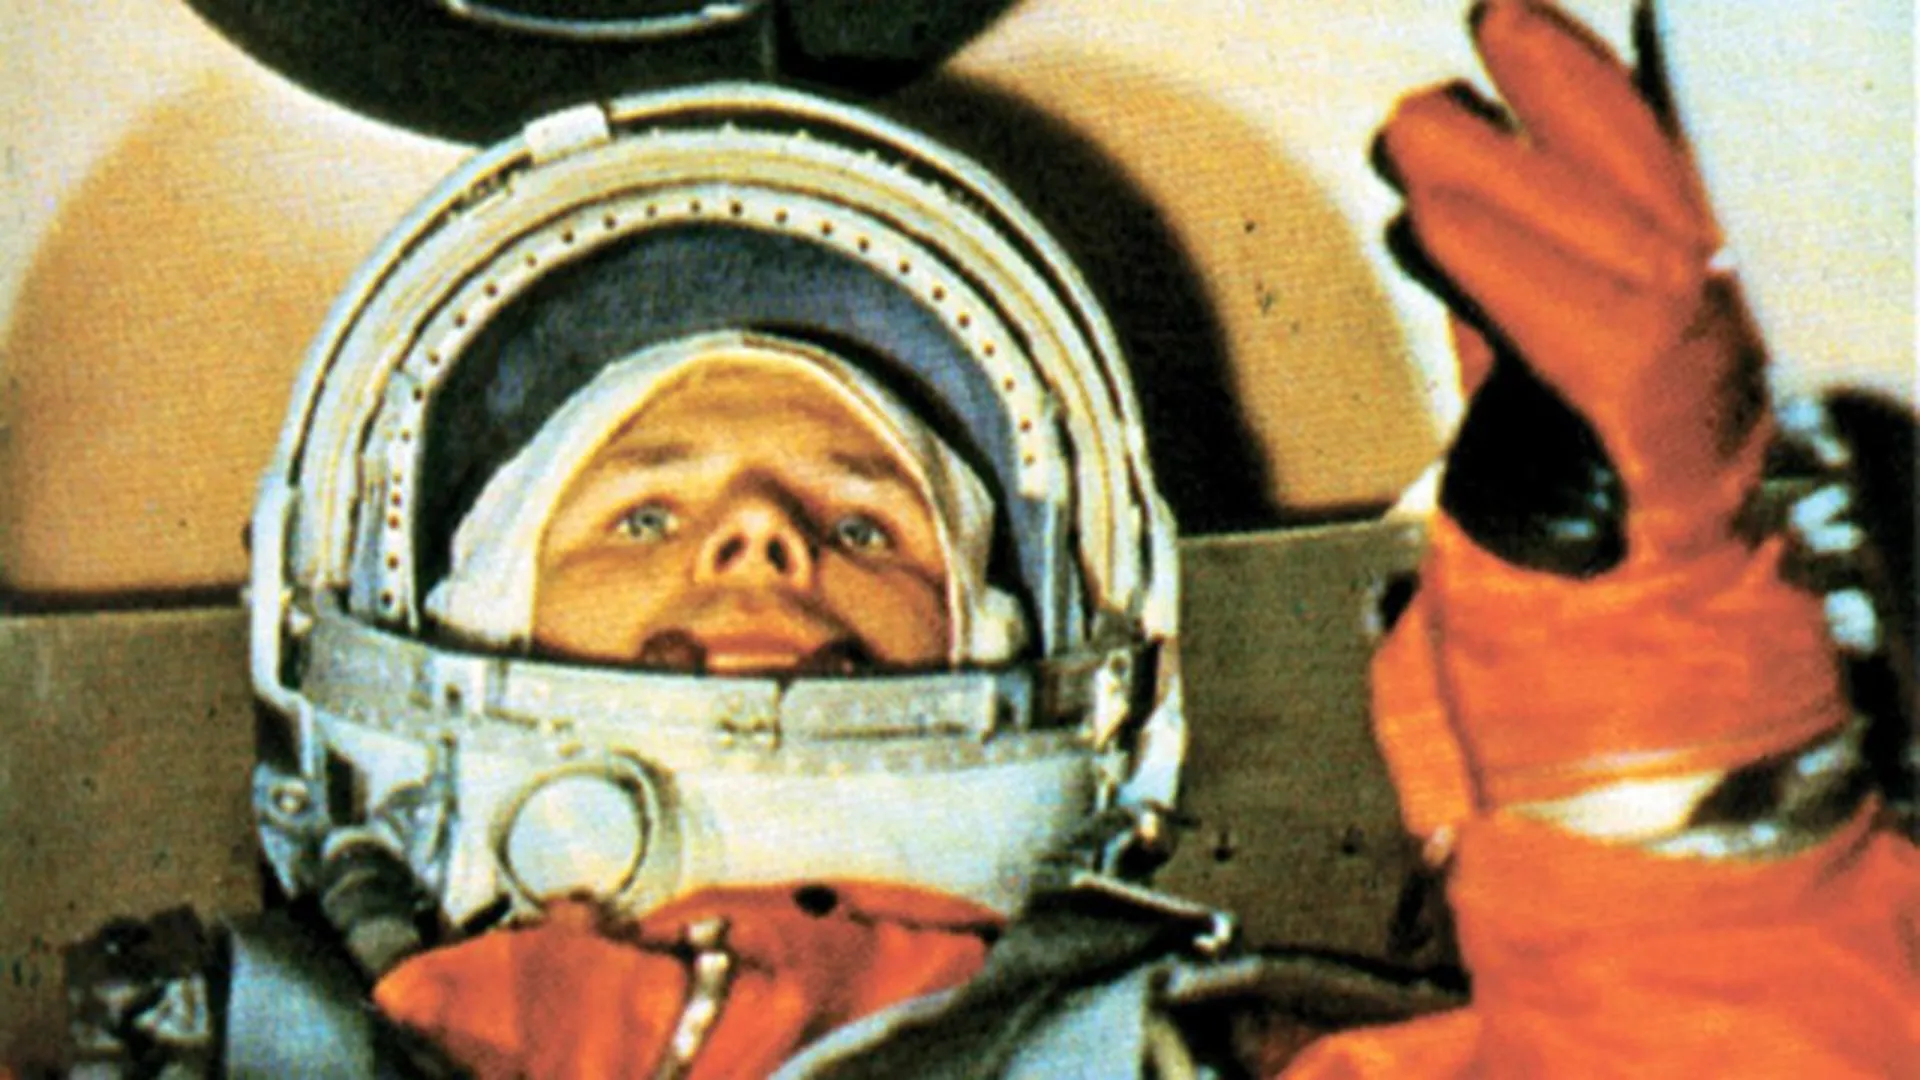 «Гагаринская летка»: пострадало ли от наводнения в Оренбурге училище первого человека, полетевшего в космос